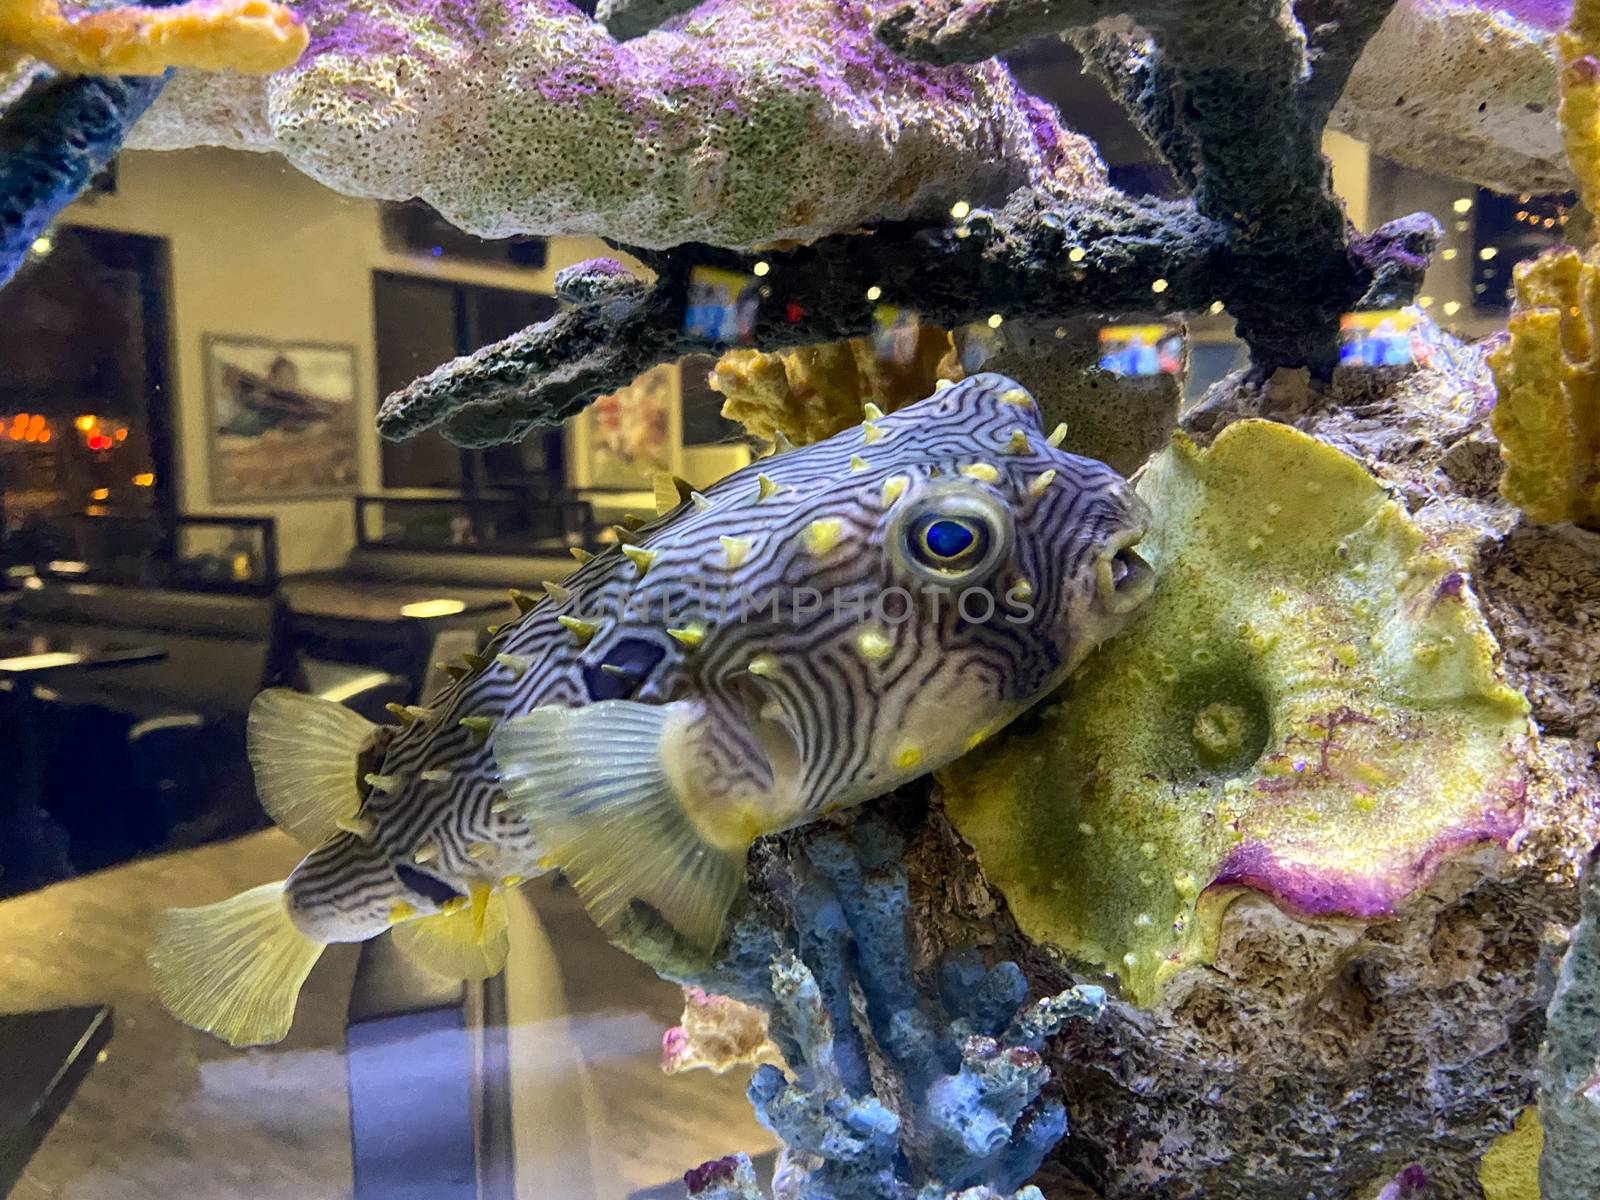 A Large Pufferfish inside an Aquarium at a Restaurant